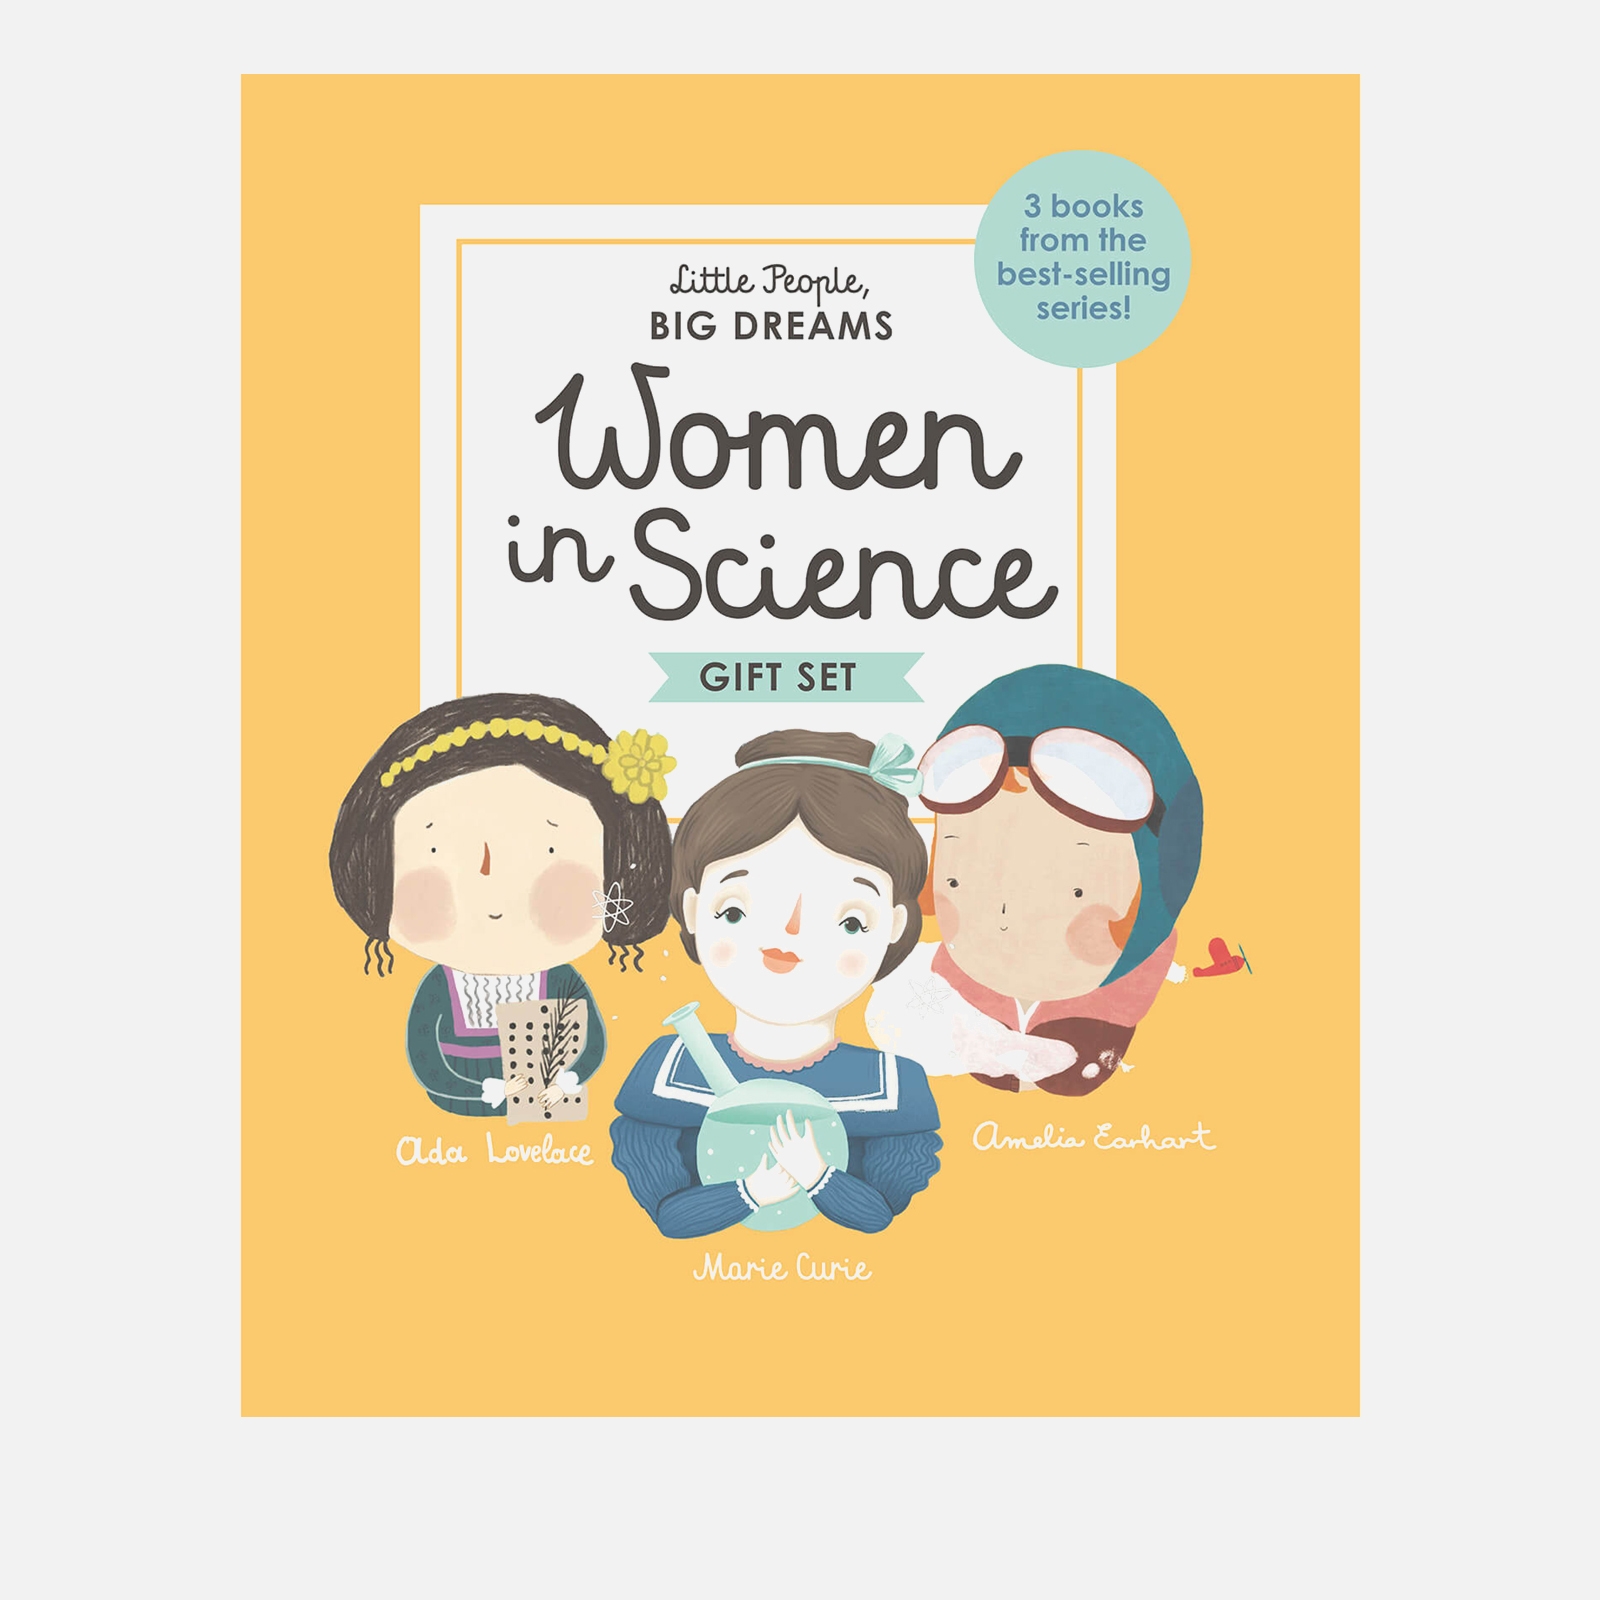 Bookspeed: Little People Big Dreams: Women in Science